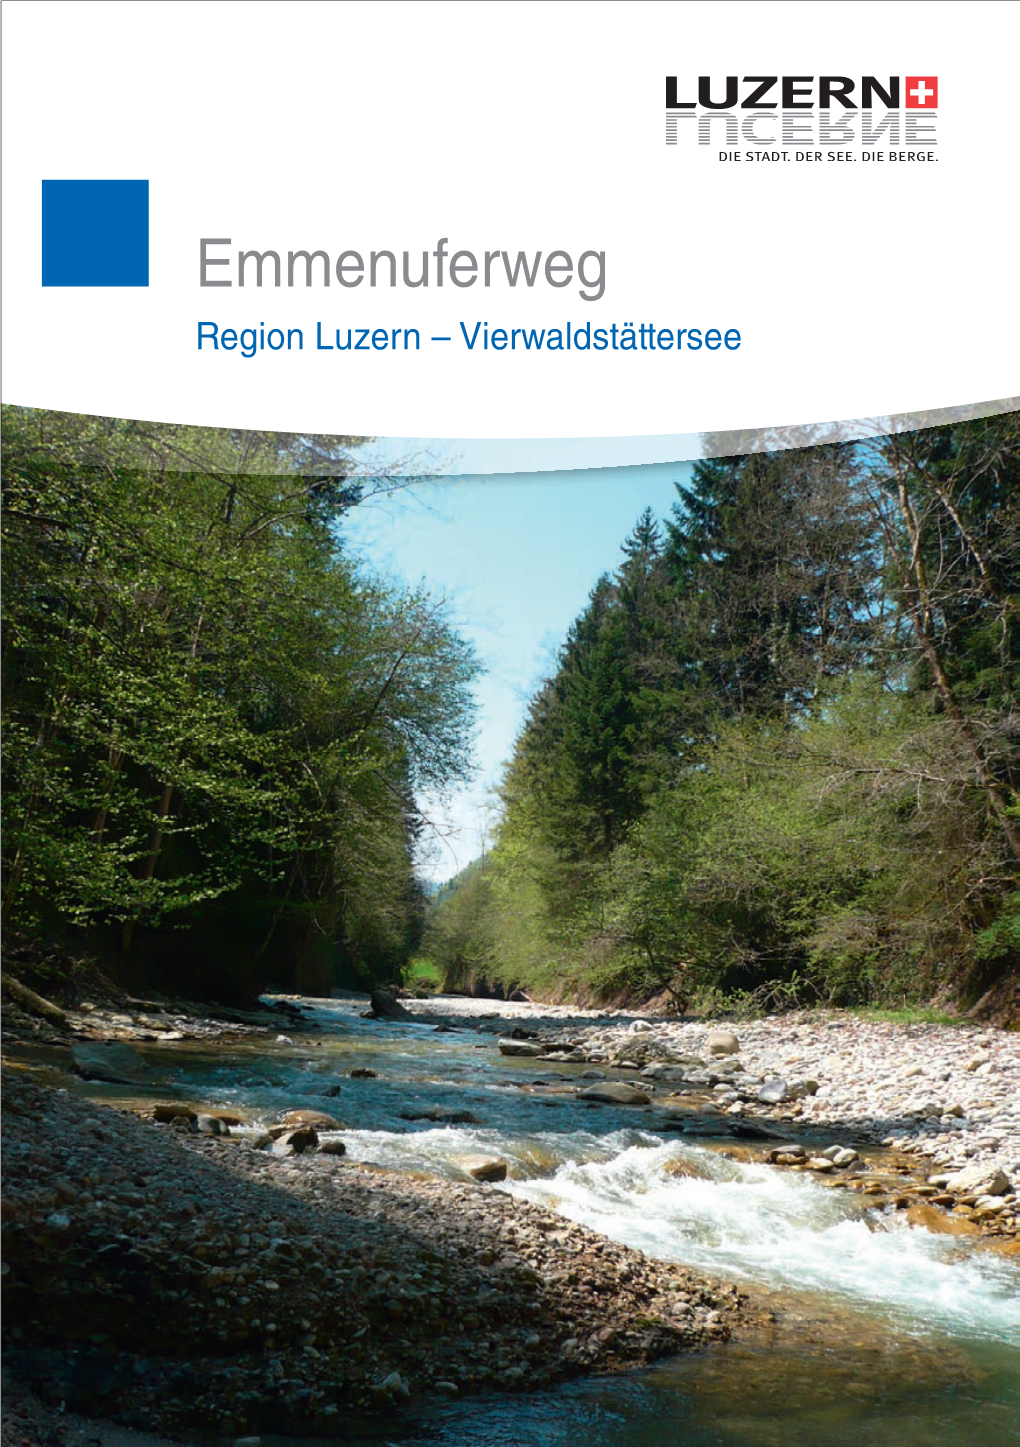 Emmenuferweg Region Luzern – Vierwaldstättersee